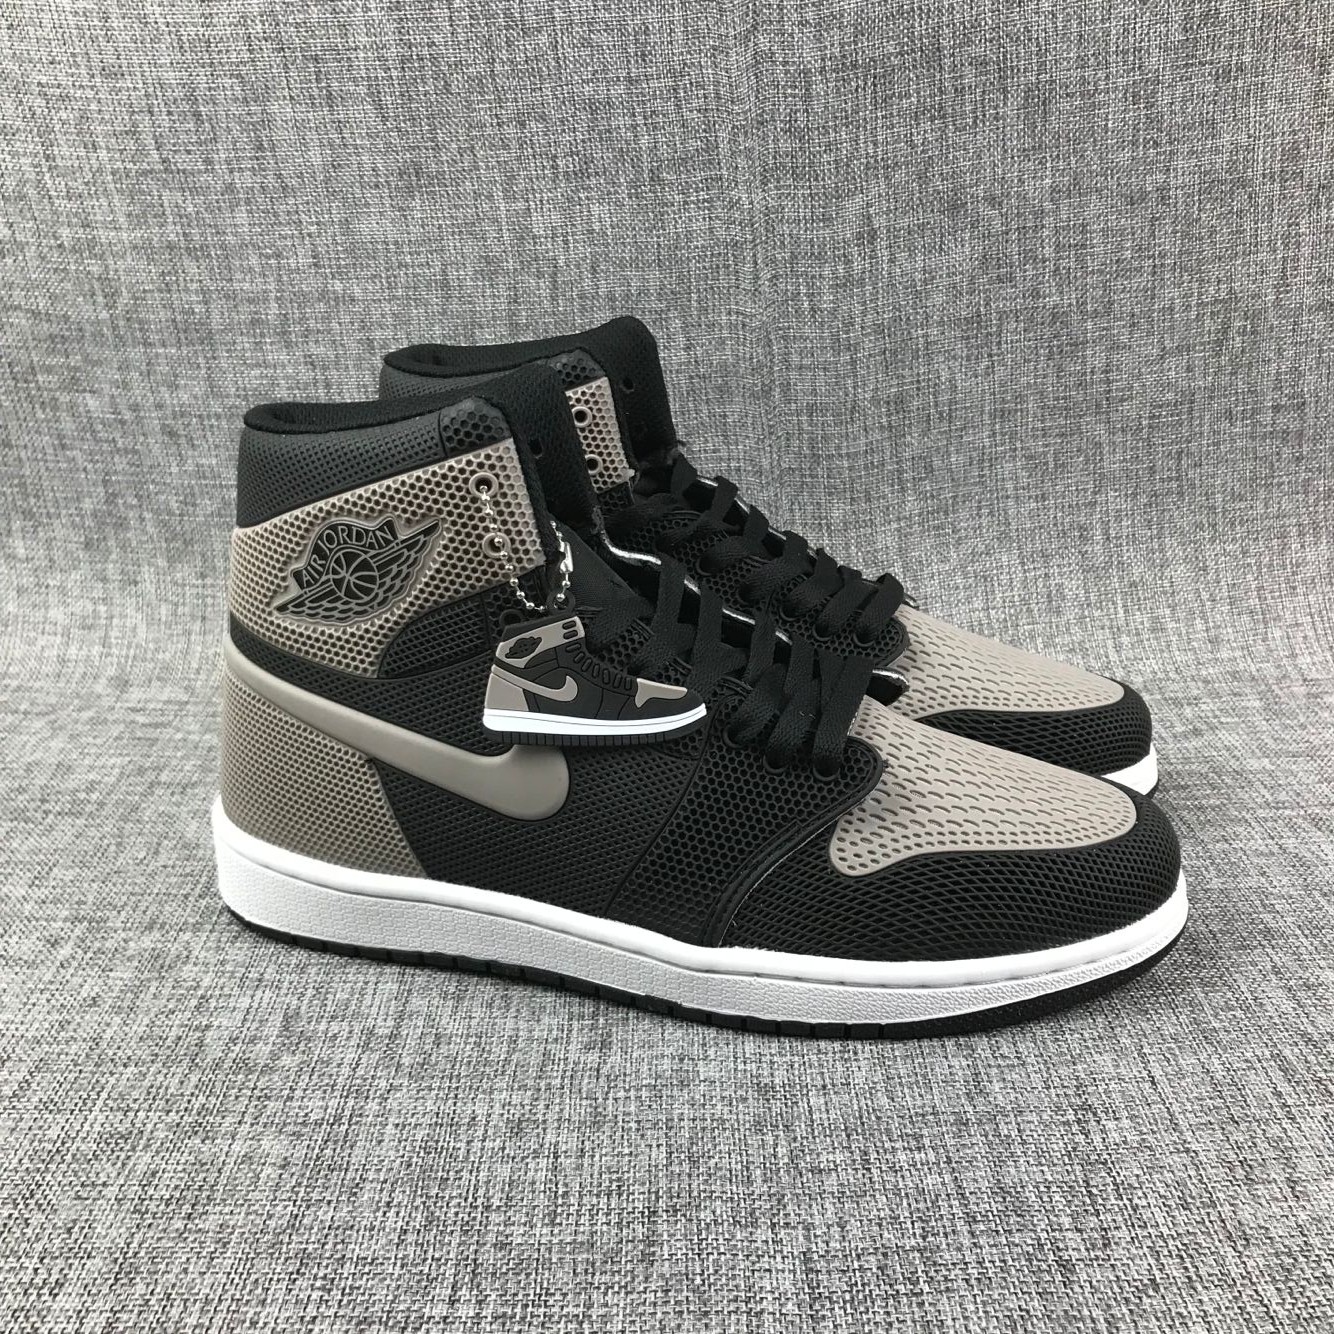 New Air Jordan 1 Drop Plastic Black Grey Shoes - Click Image to Close